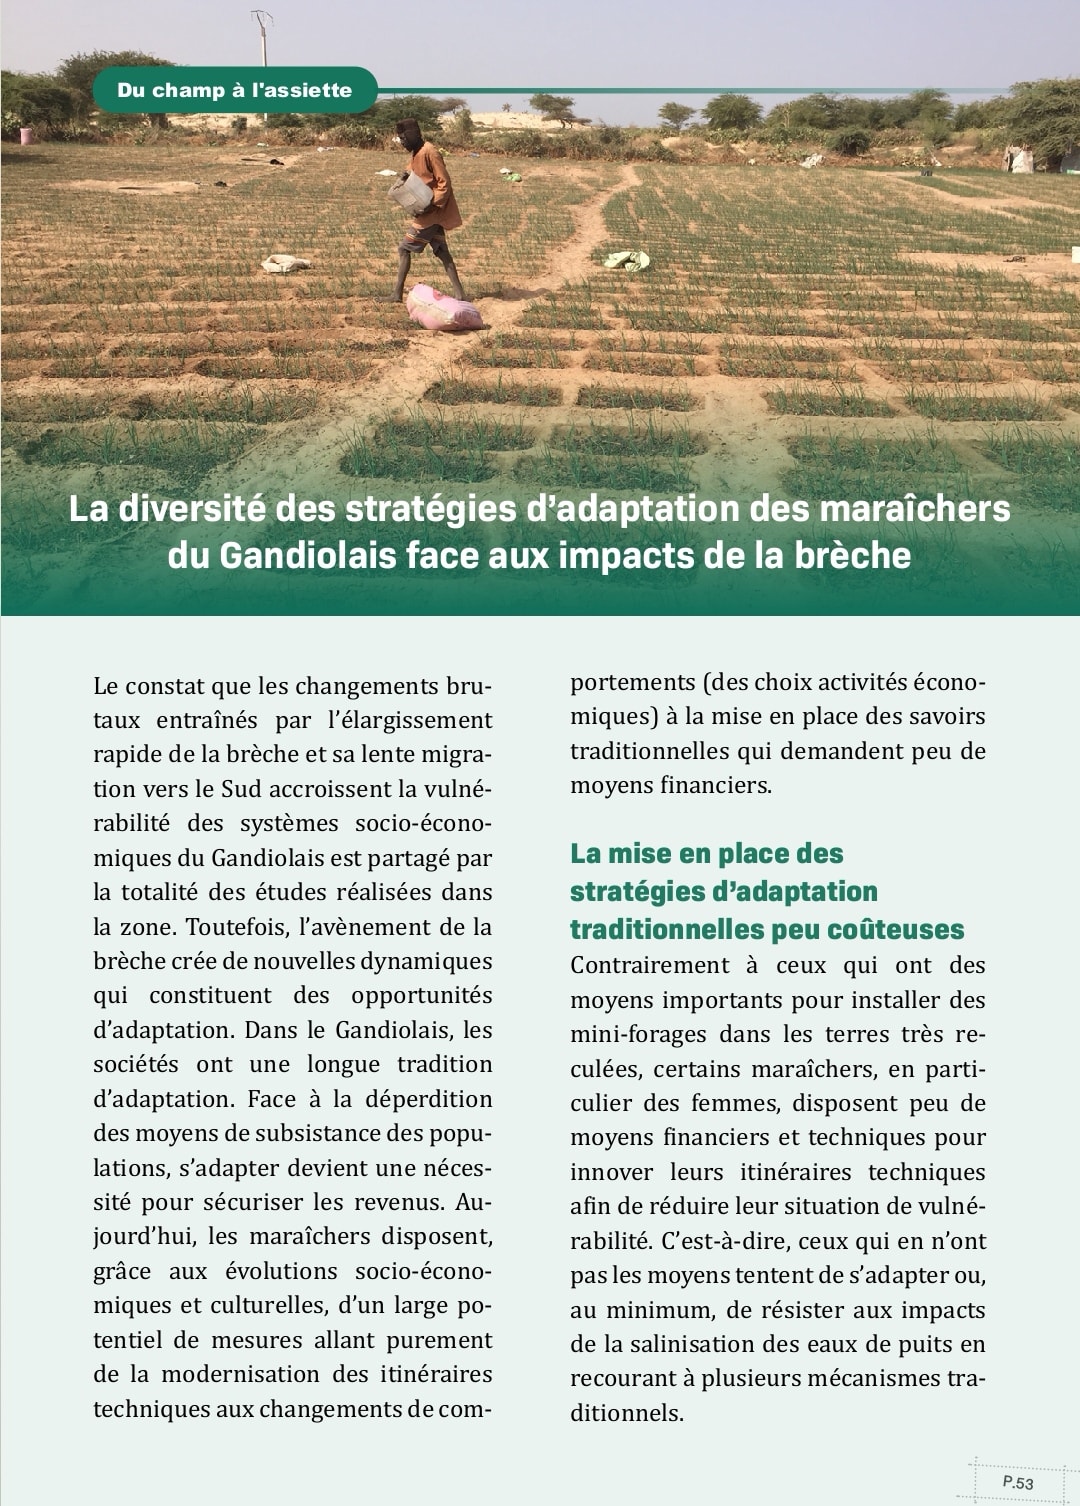 You are currently viewing Stratégies d’adaptation des maraîchers du Gandiolais face aux impacts de la brèche.